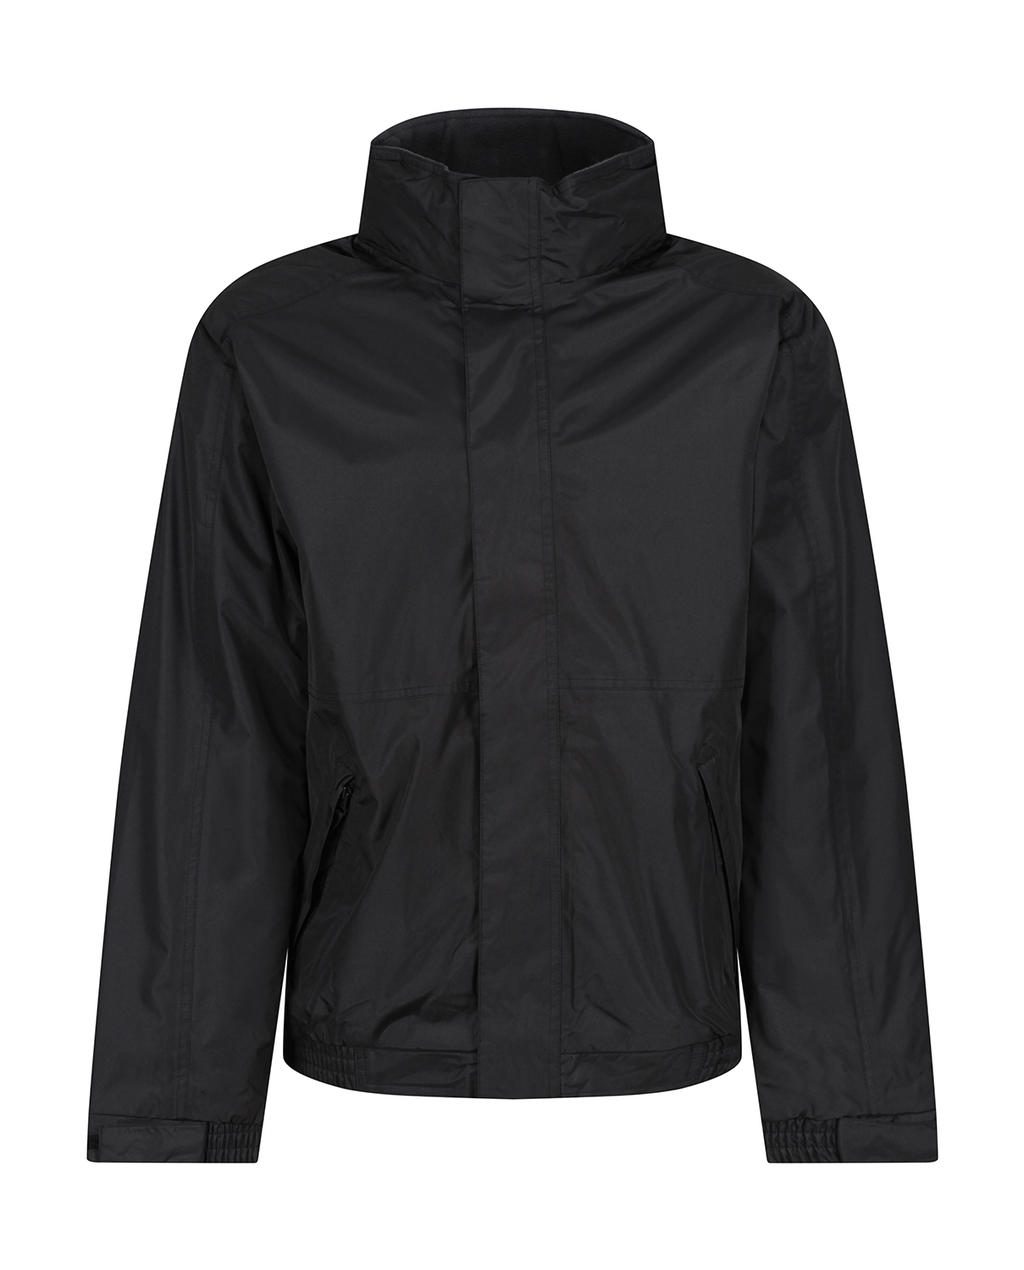  Eco Dover Jacket in Farbe Black/Ash